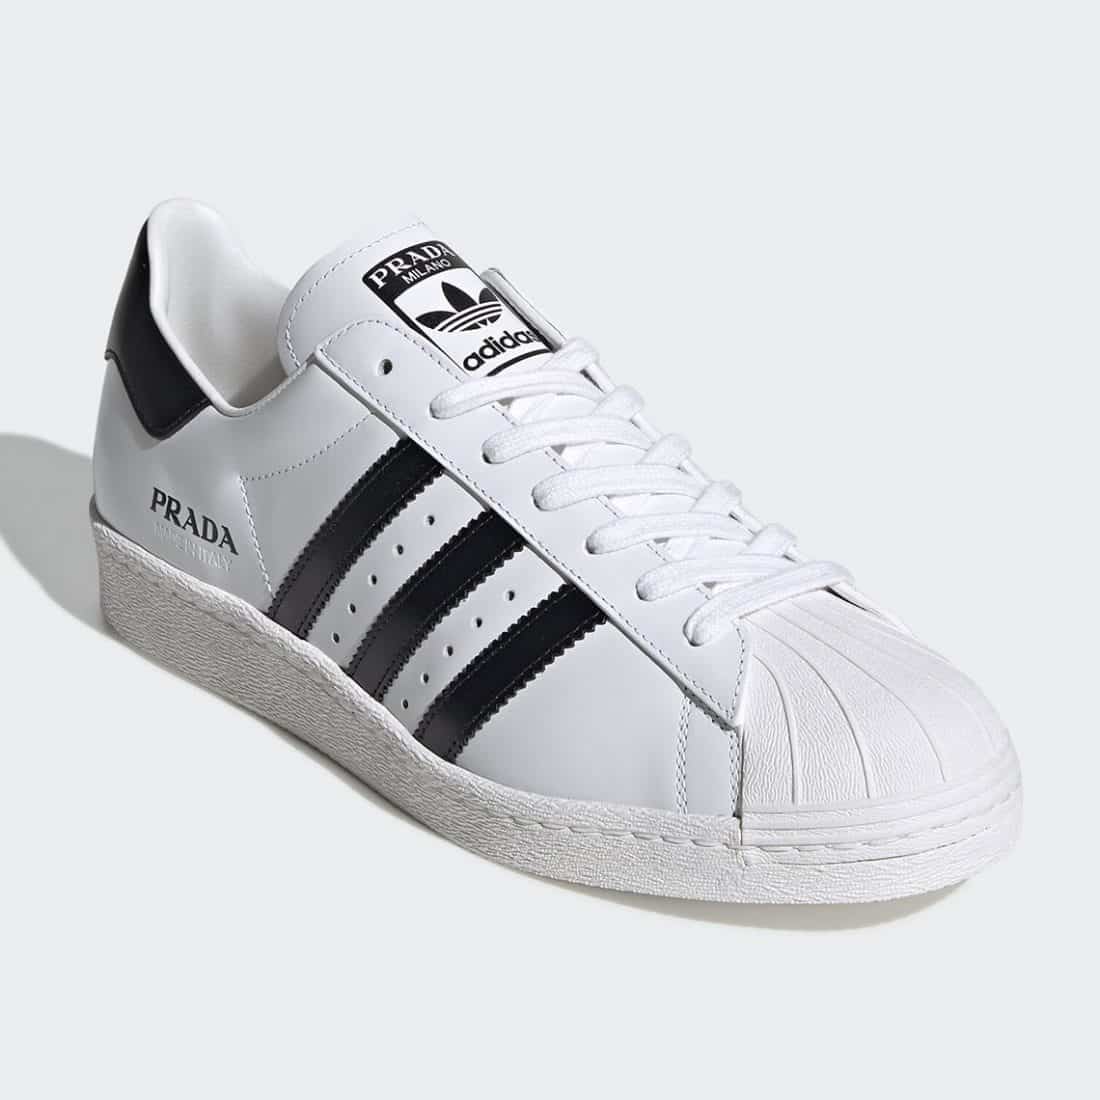 Deux Prada x adidas Superstar White \u0026 Black pour mars - Le Site de 